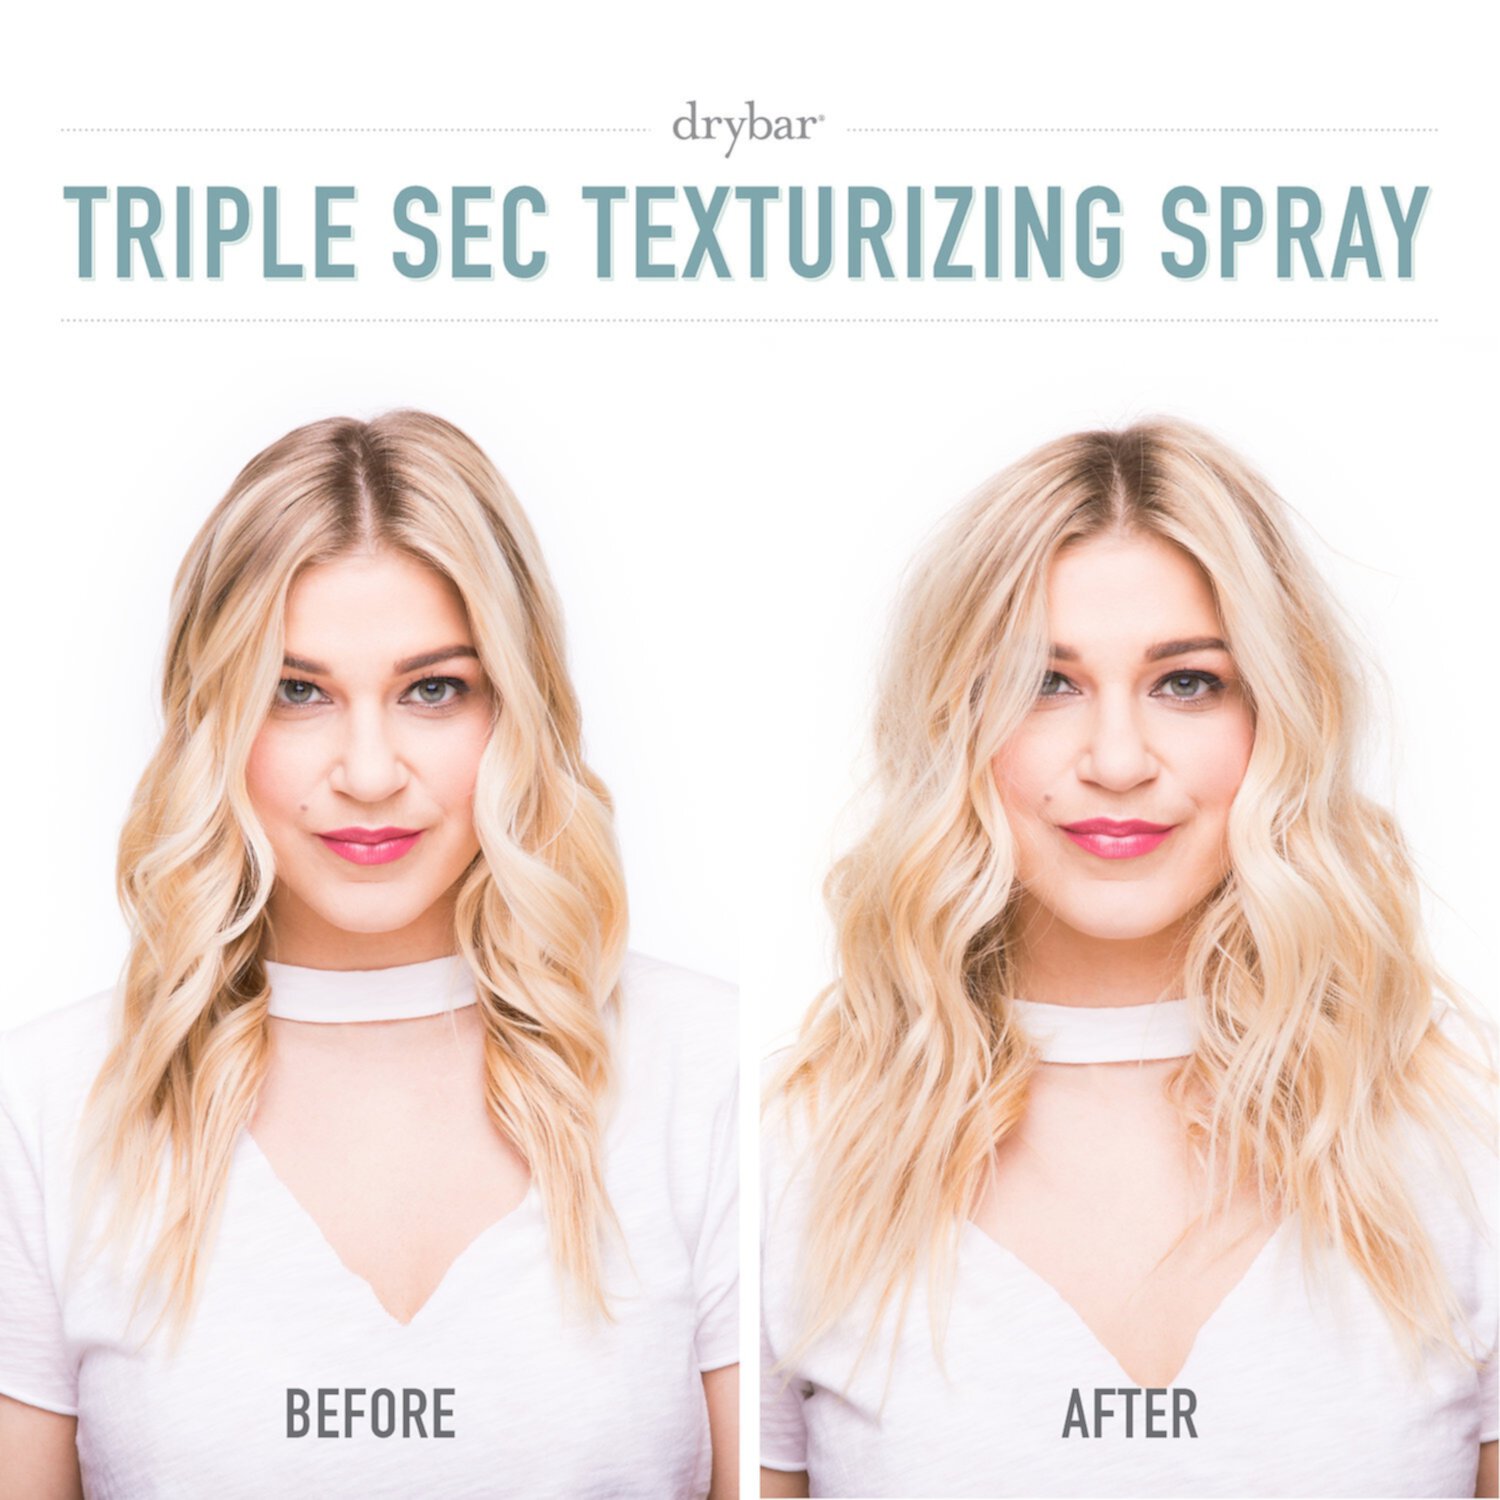 Triple Sec 3-in-1 Texturizing Finishing Spray DRYBAR